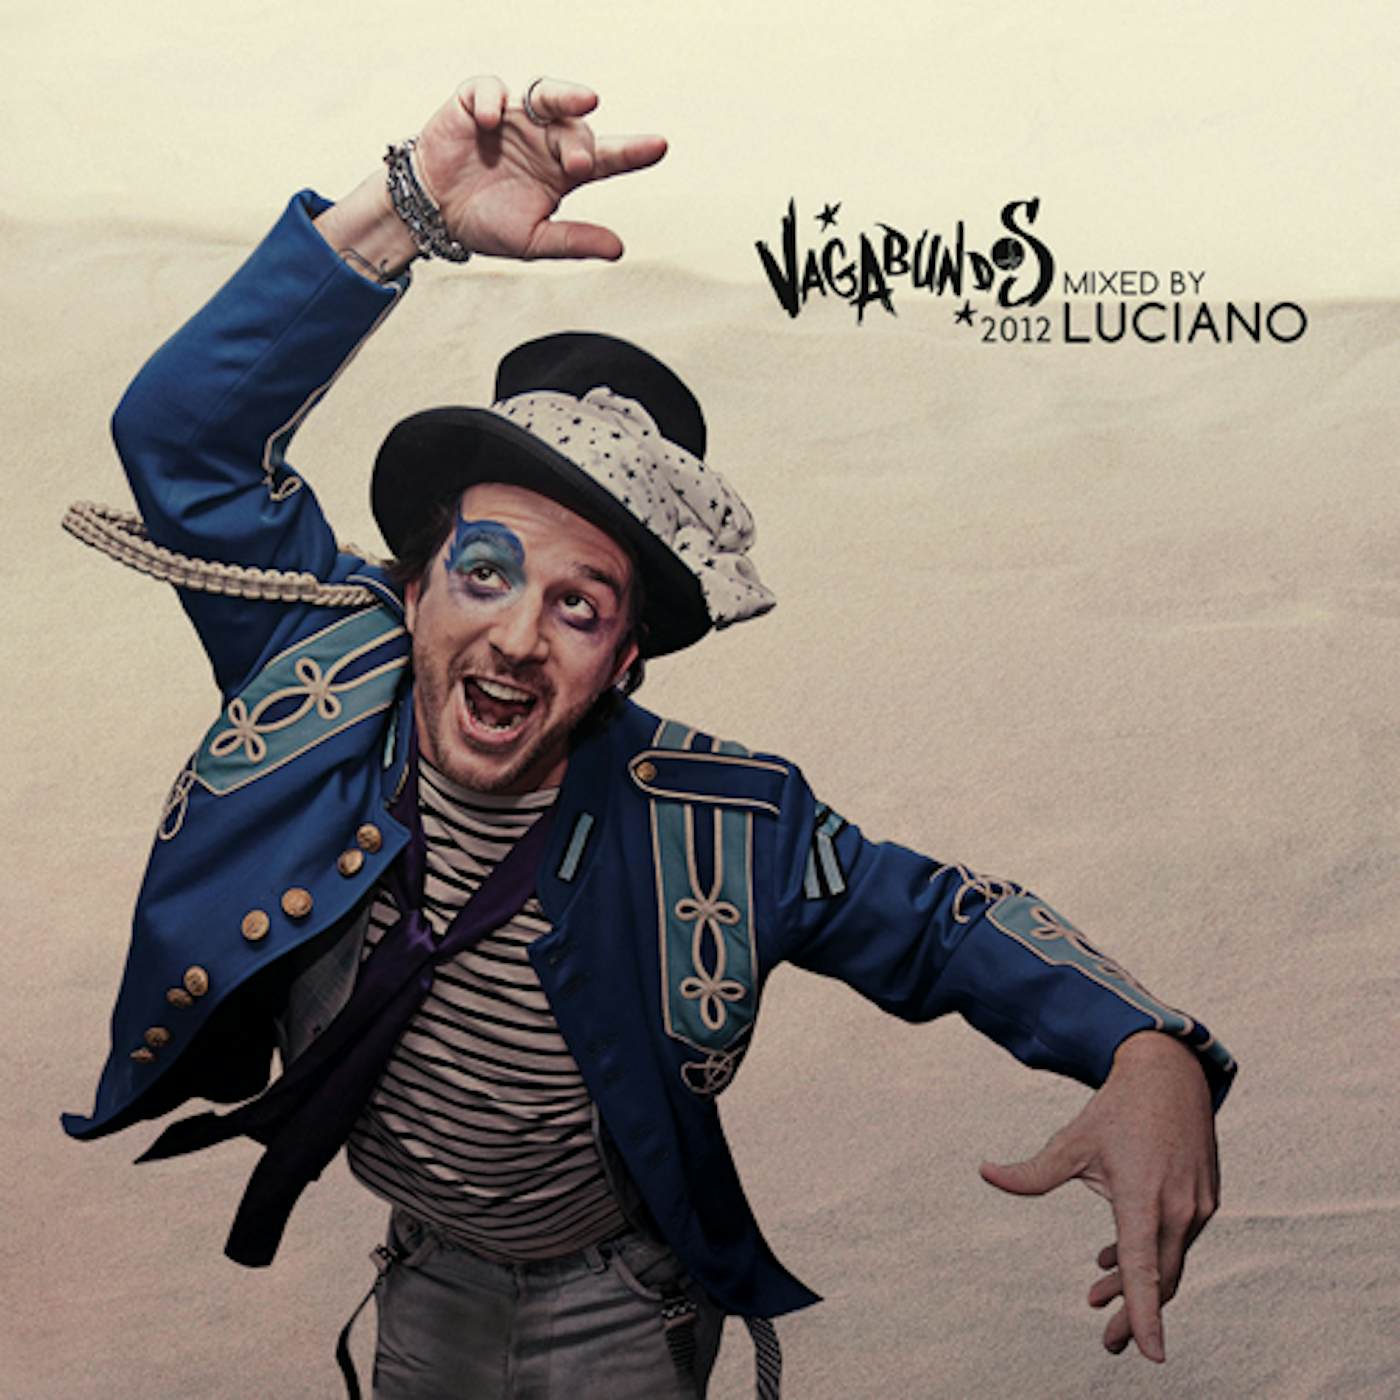 Luciano VAGABUNDOS 2012 CD